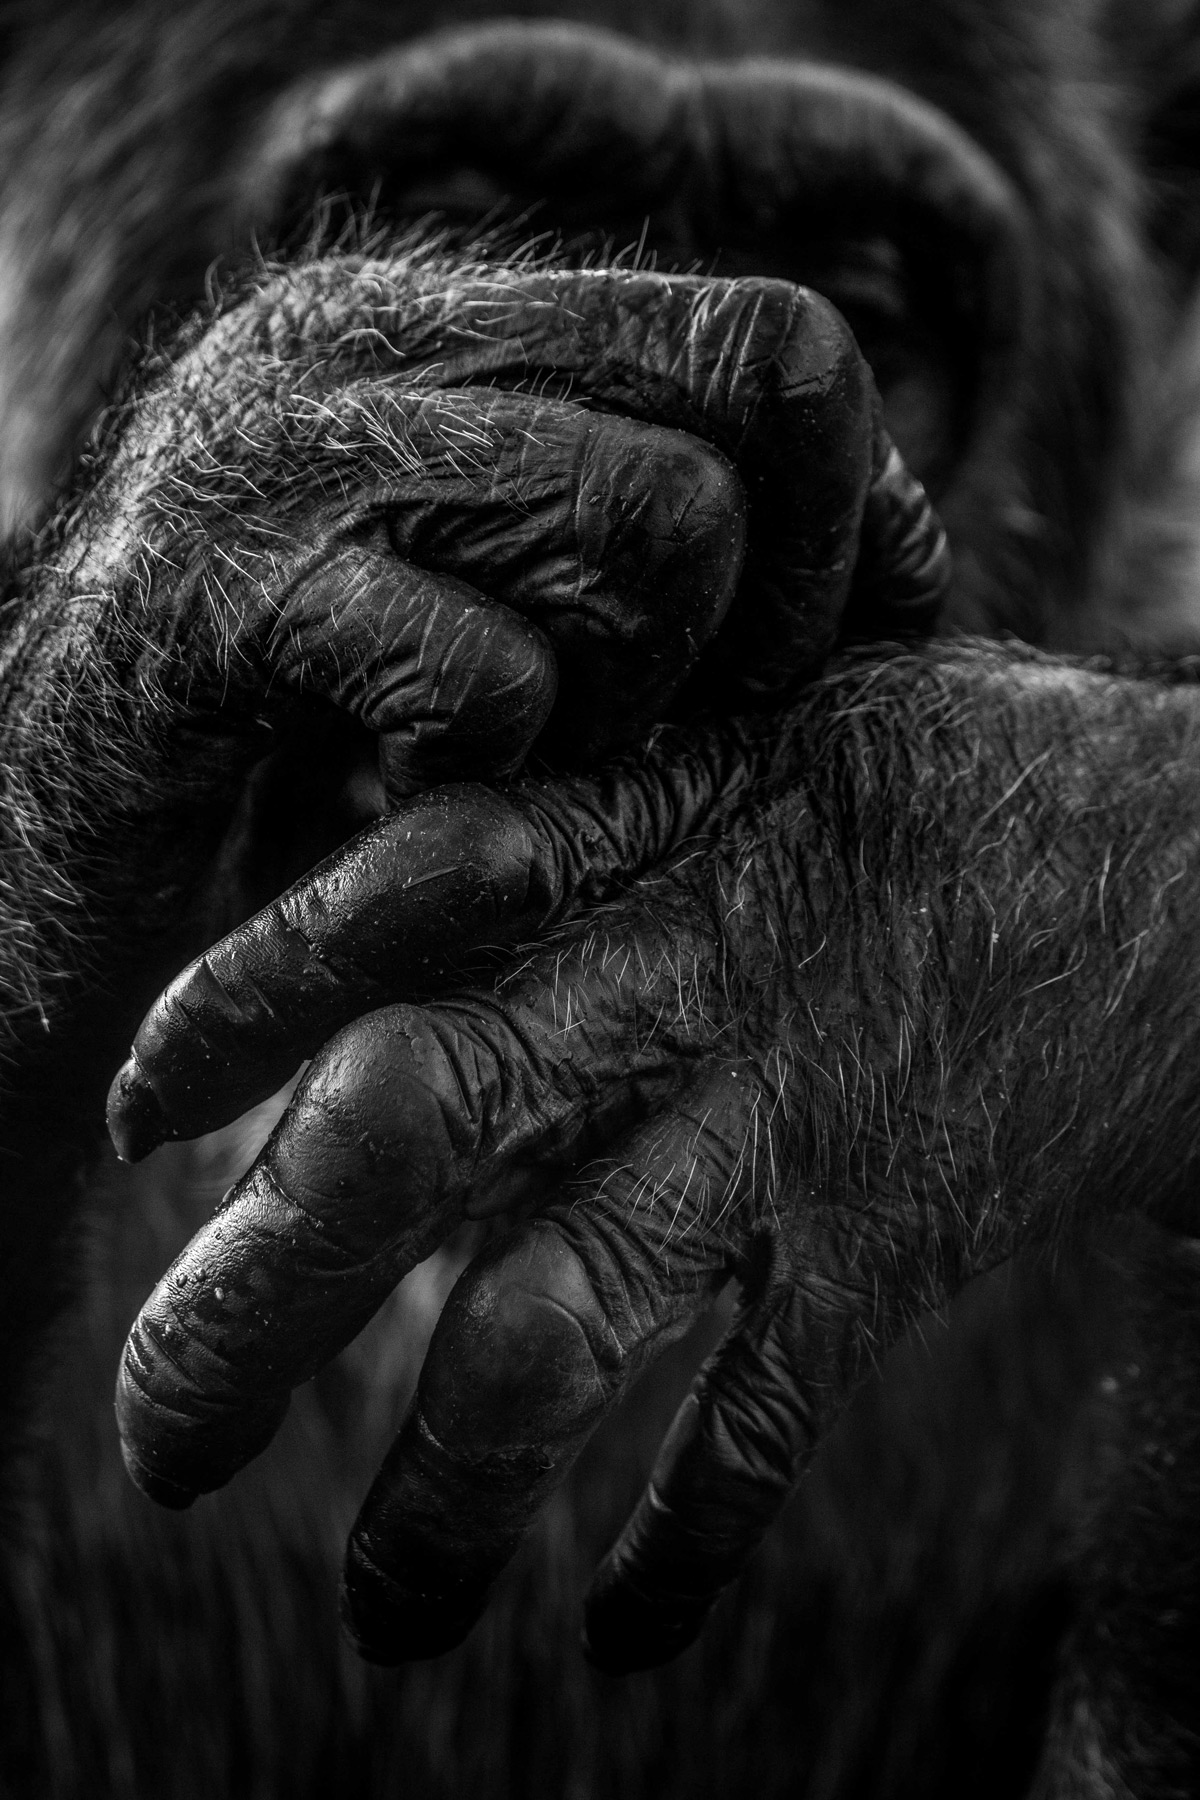 A chimpanzee scratches an itch at Ngamba Island Chimpanzee Sanctuary, Lake Victoria, Uganda © Anthony Ochieng